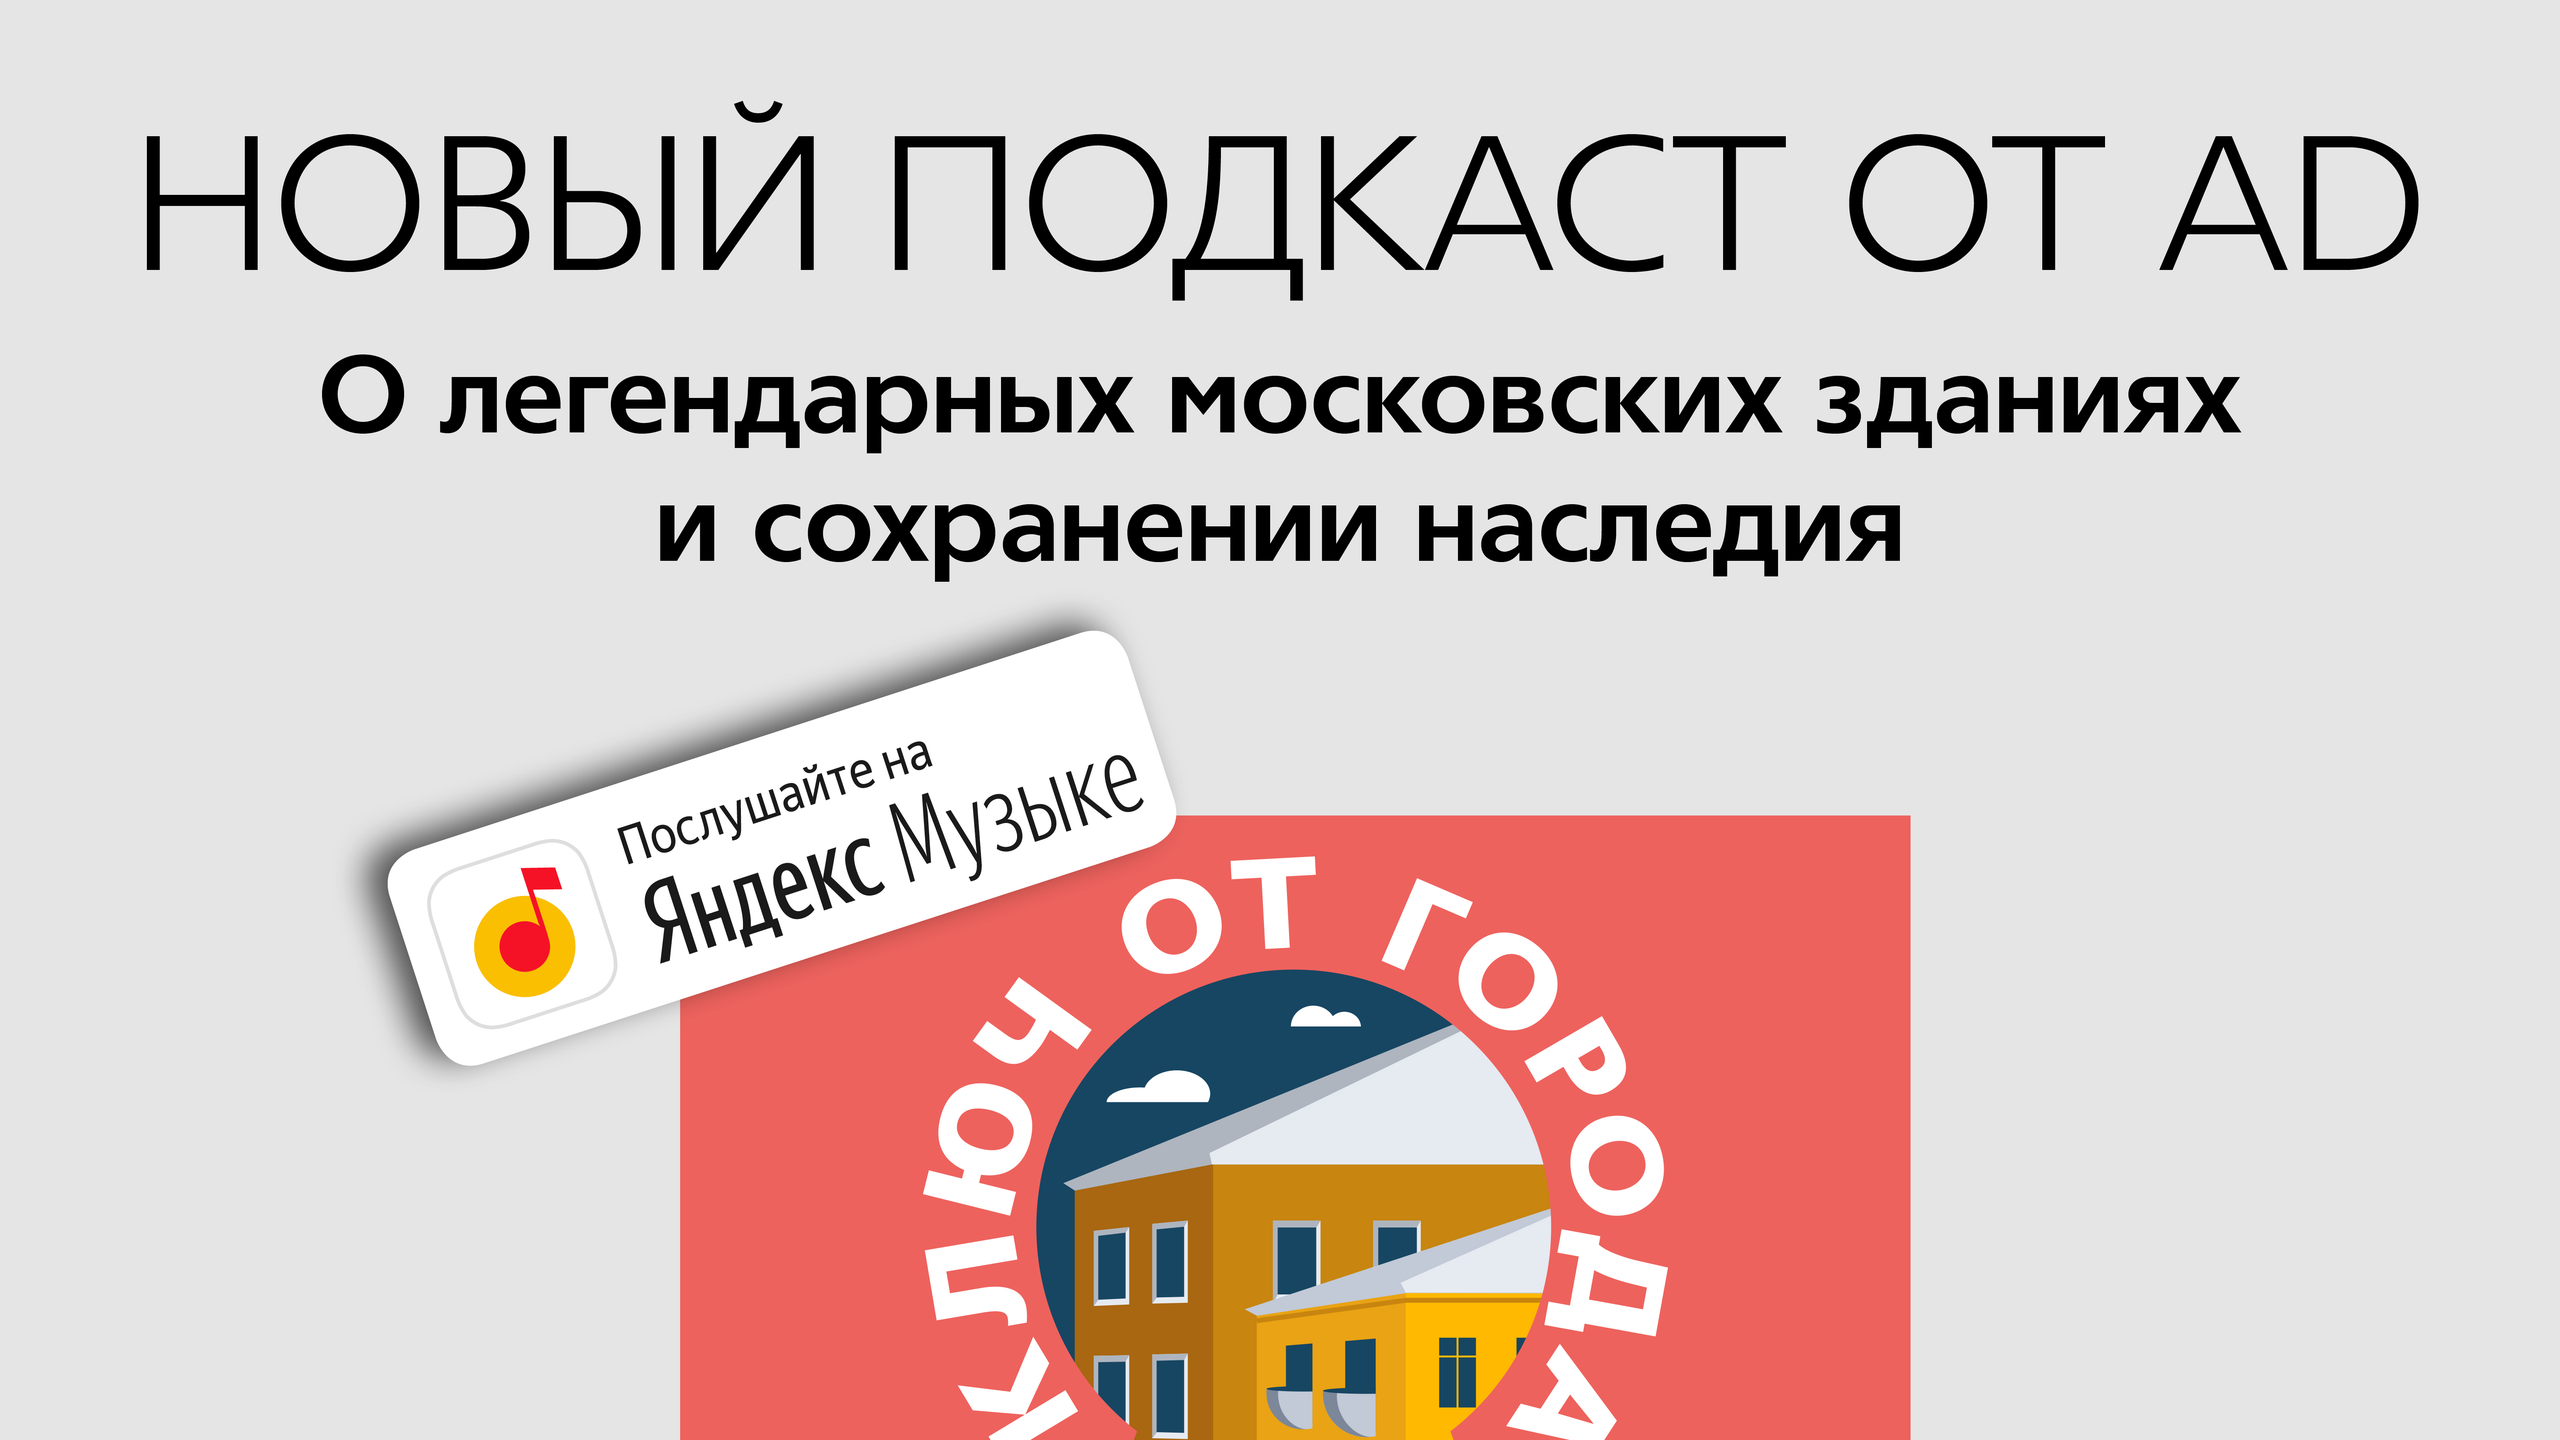 Новый подкаст от AD “Ключ от города” о сохранении наследия и легендарных московских зданиях